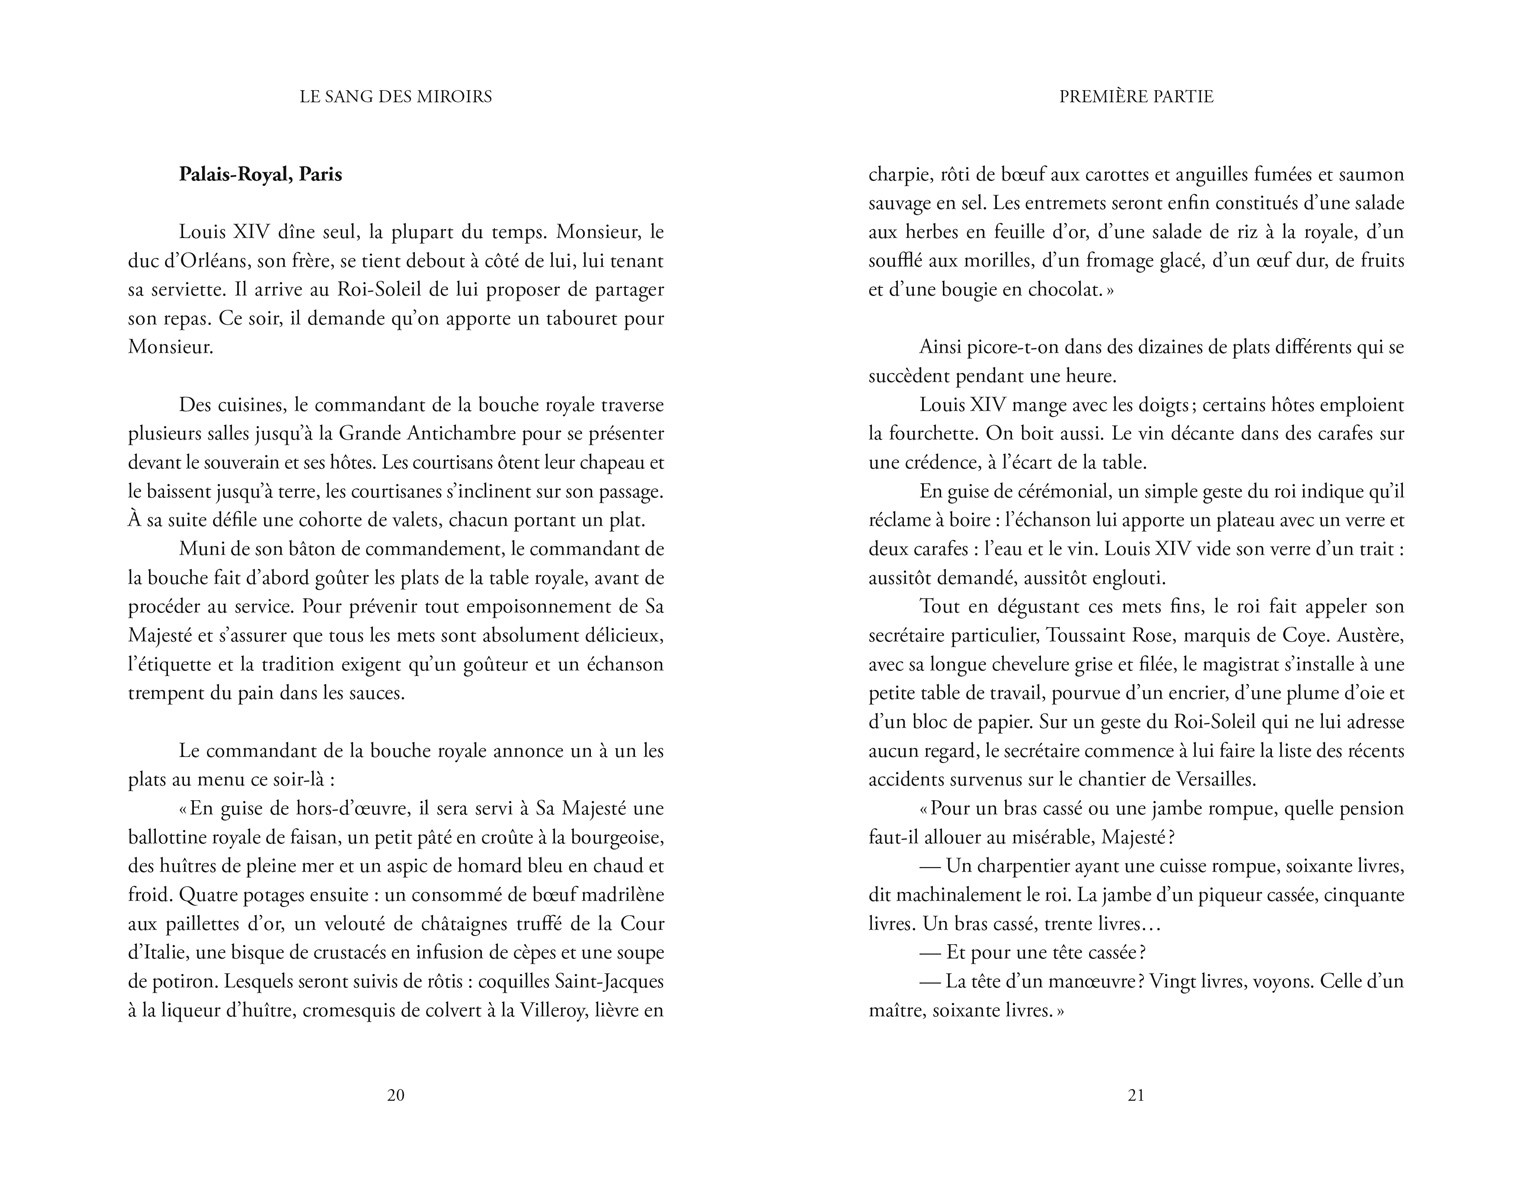 Le Sang des miroirs, extrait 2 : Palais-Royal, Paris (pages 20 et 21)